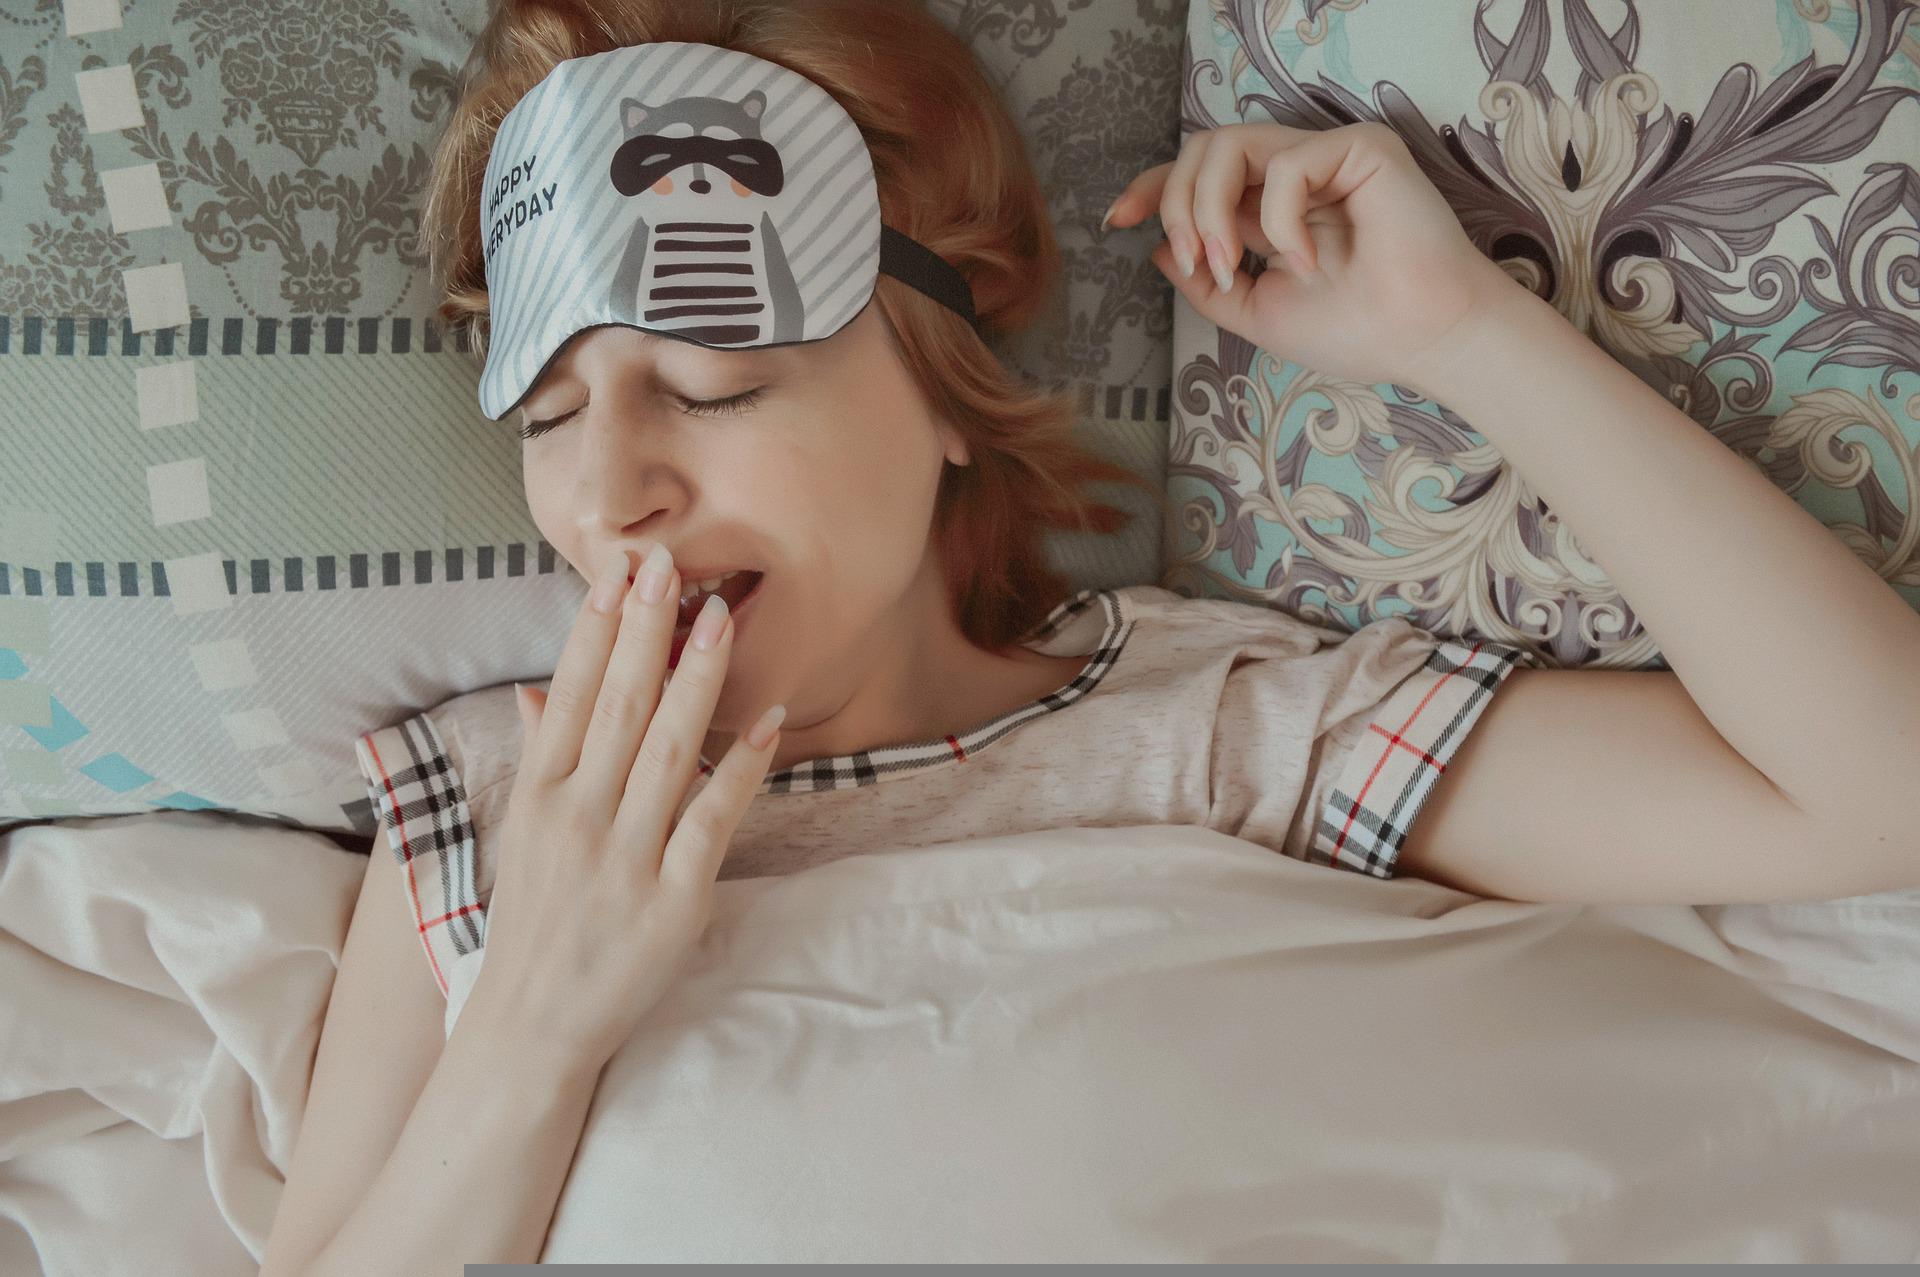 Sering Alami Insomnia? Yuk Coba 5 Tips Jitu Ini Untuk Tidur Yang Berkualitas